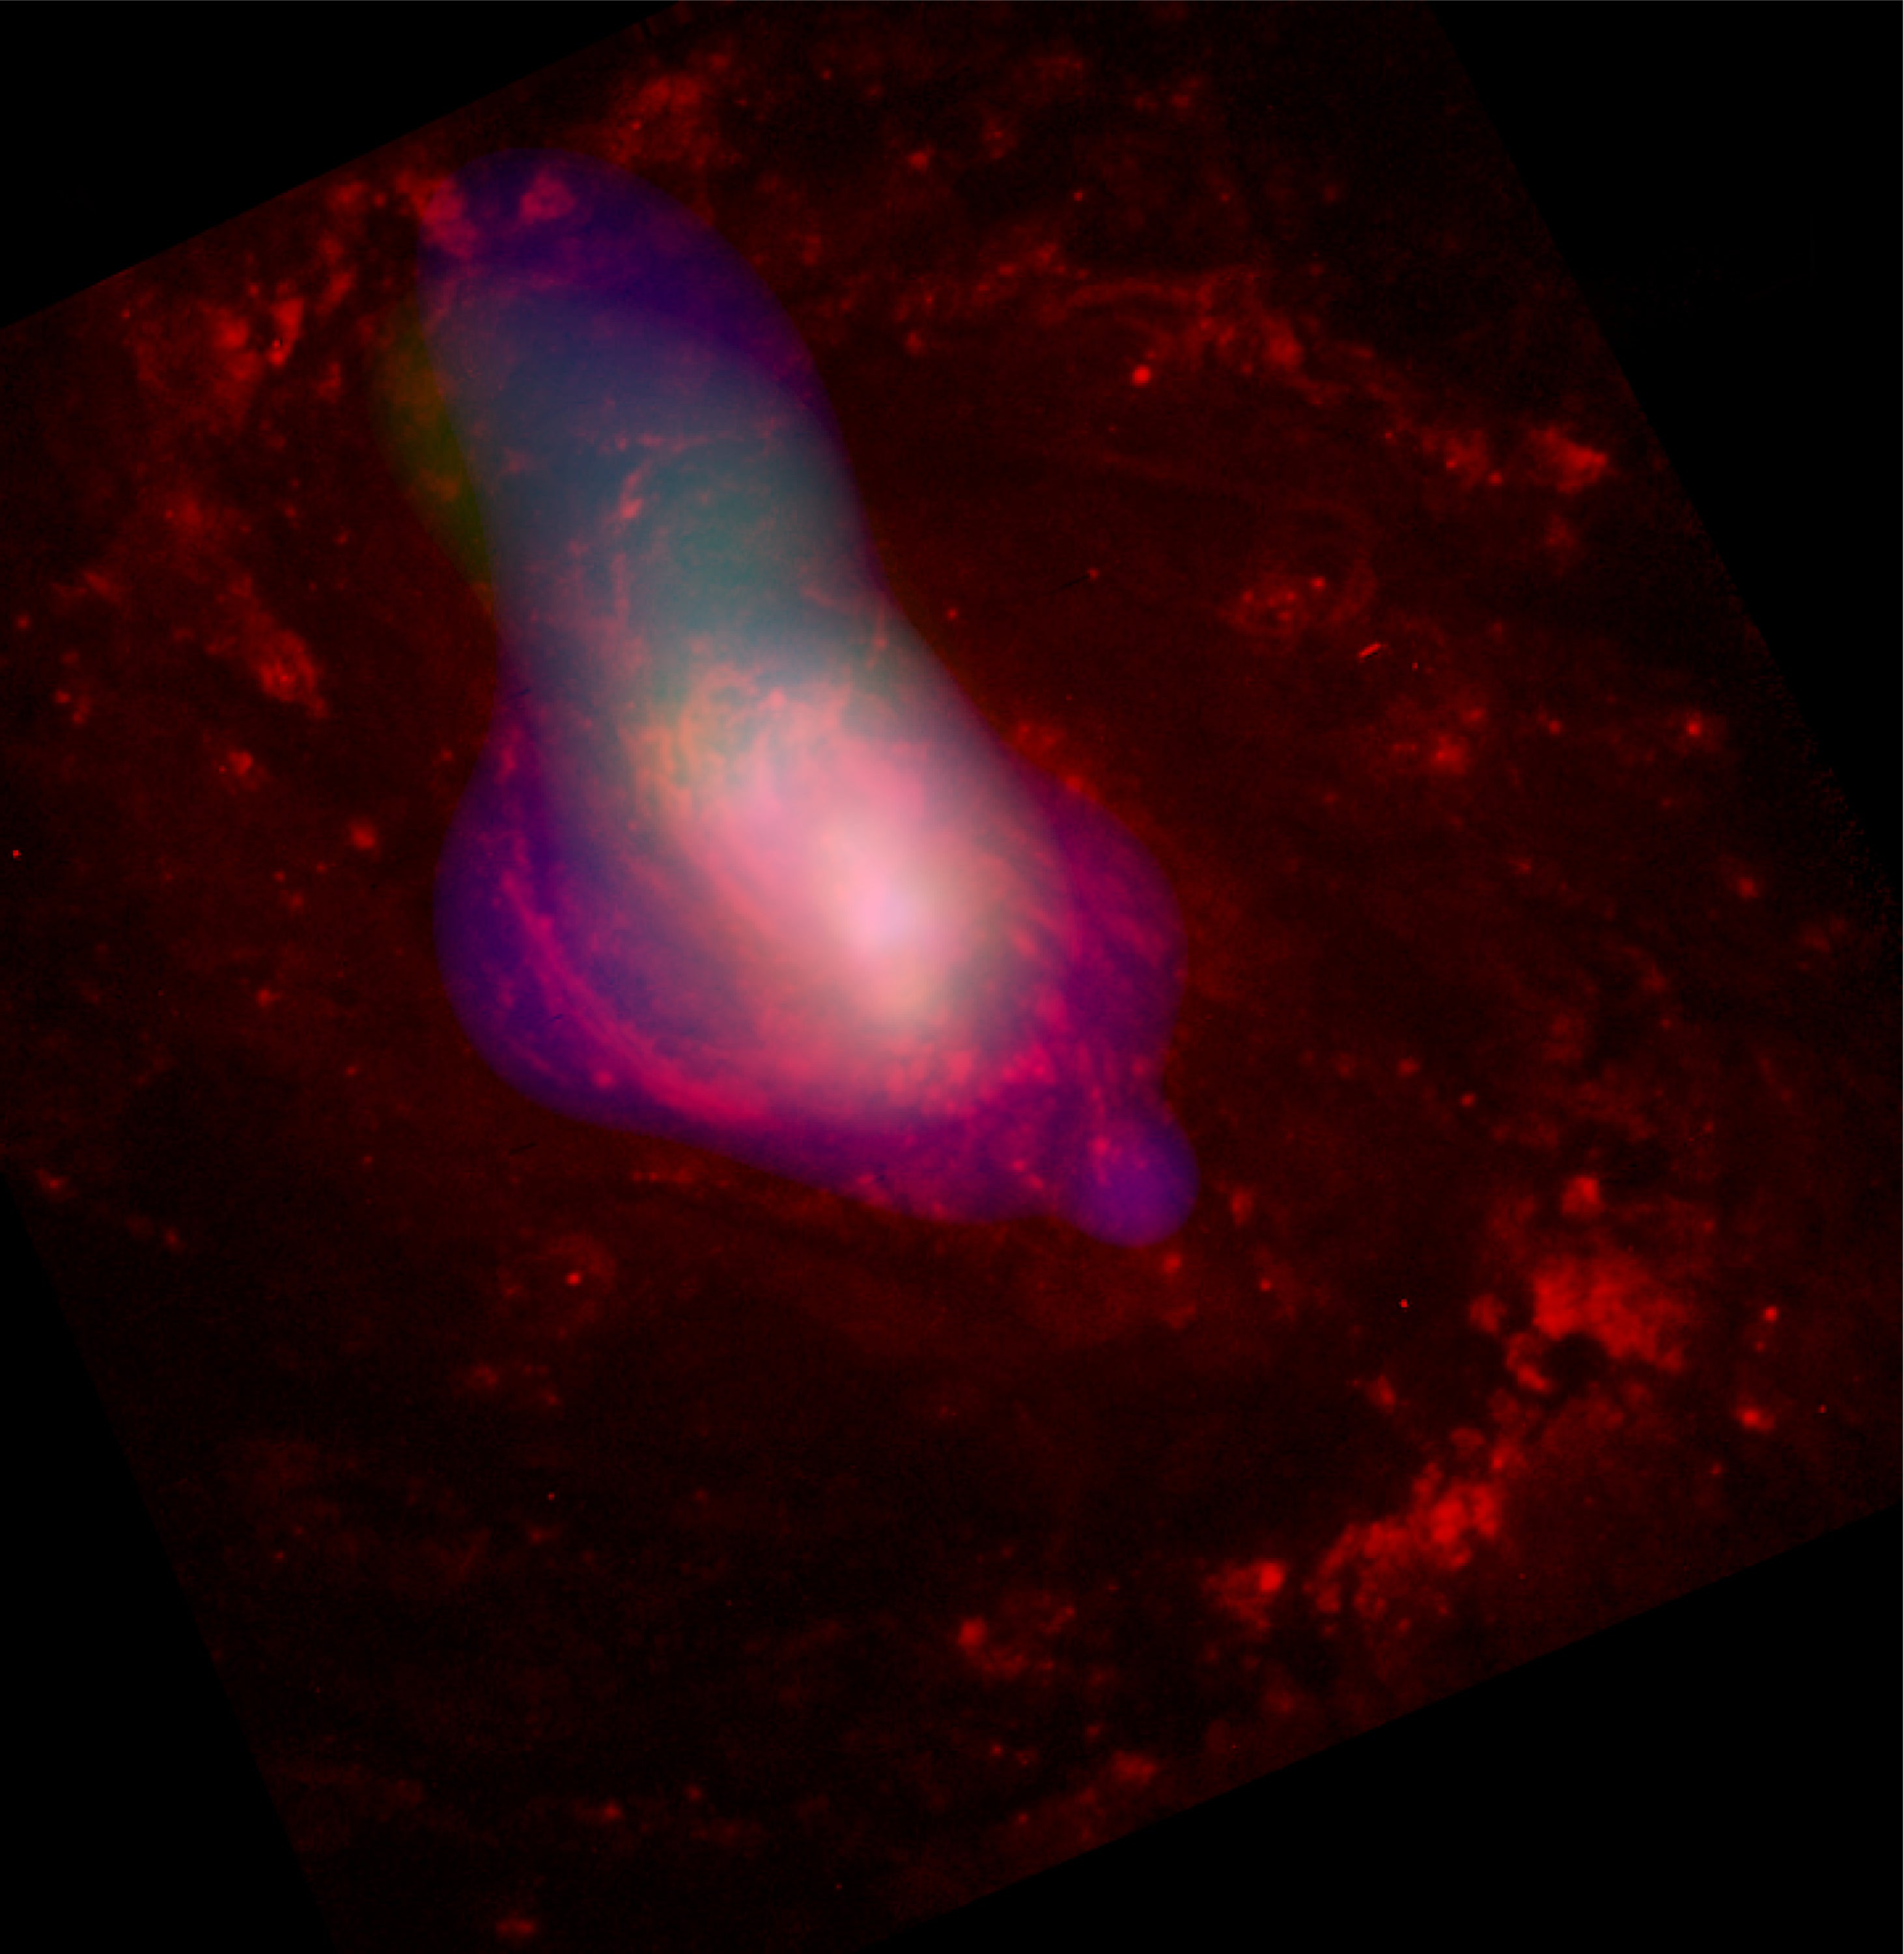 Una nube de gas blanco es alejada del centro de la galaxia activa Messier 77, presumiblemente por el agujero negro supermasivo que se esconde en su centro